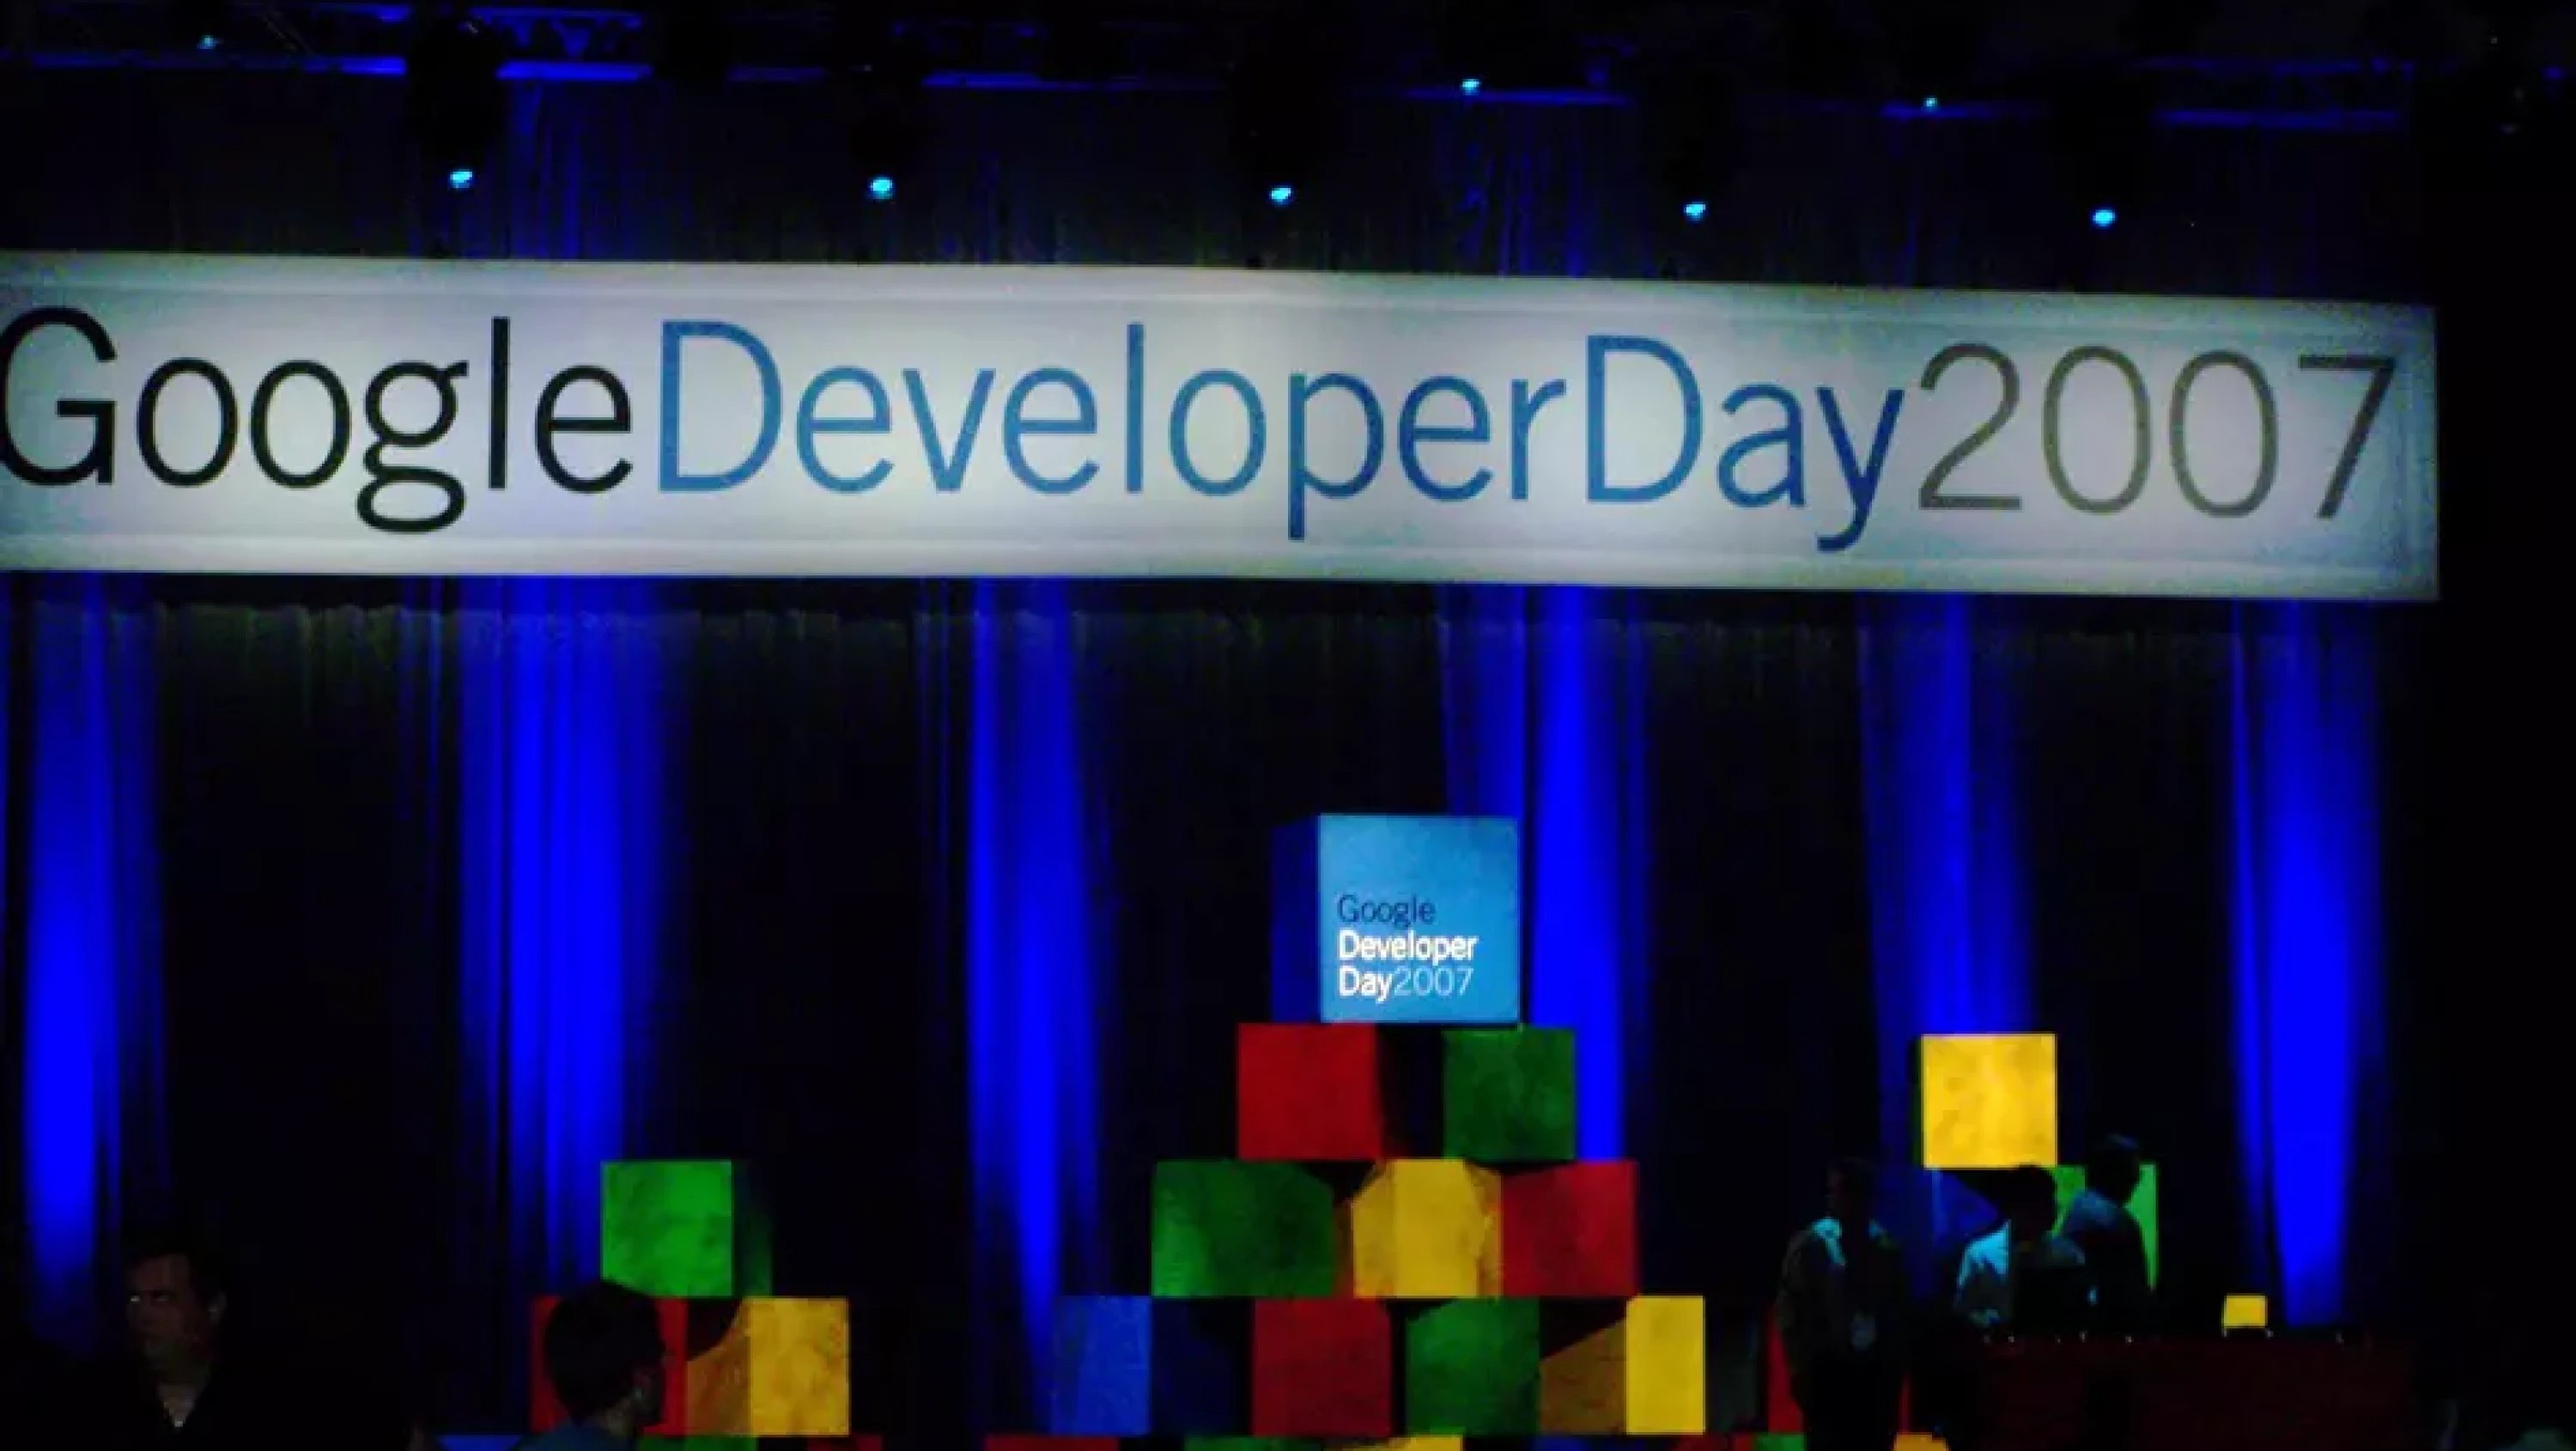 Google Developer Day 2007